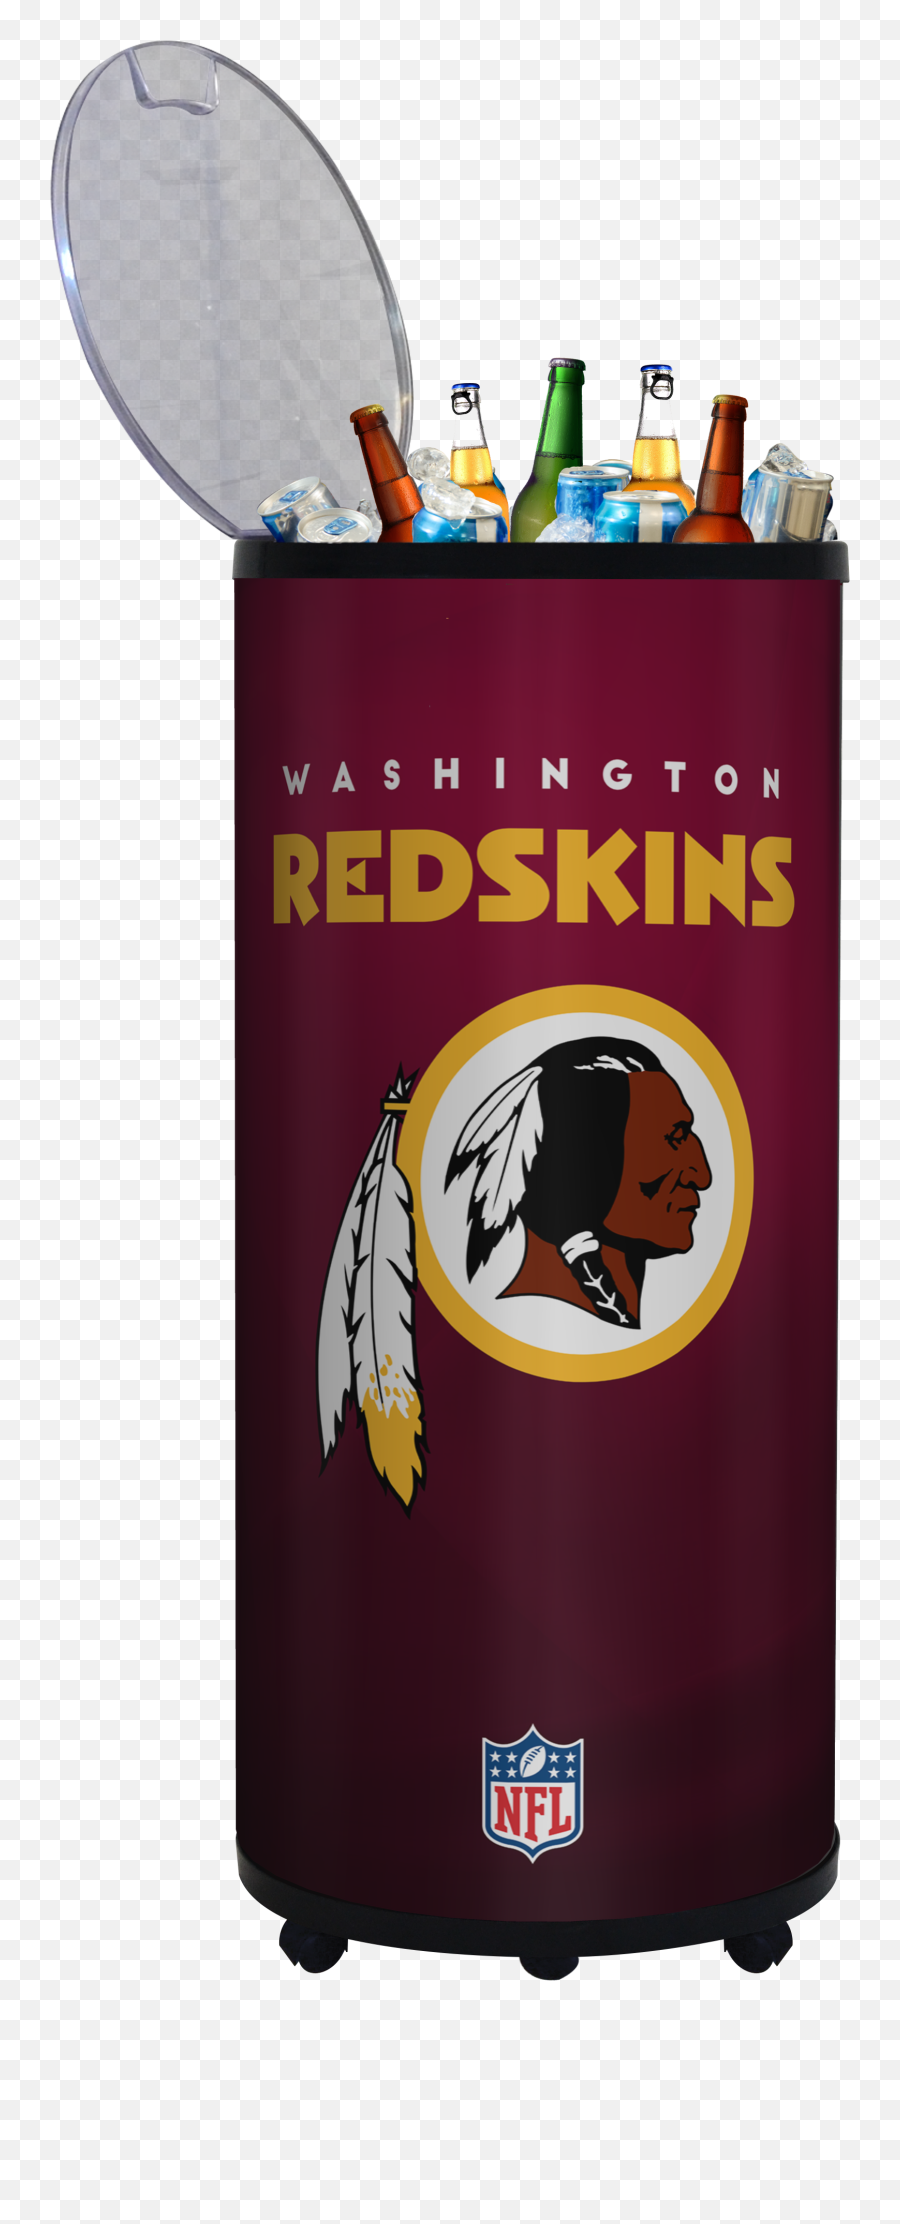 Download Washington Redskins 17 X 40 Beverage Ice Barrel Emoji,Redskins Logo Png